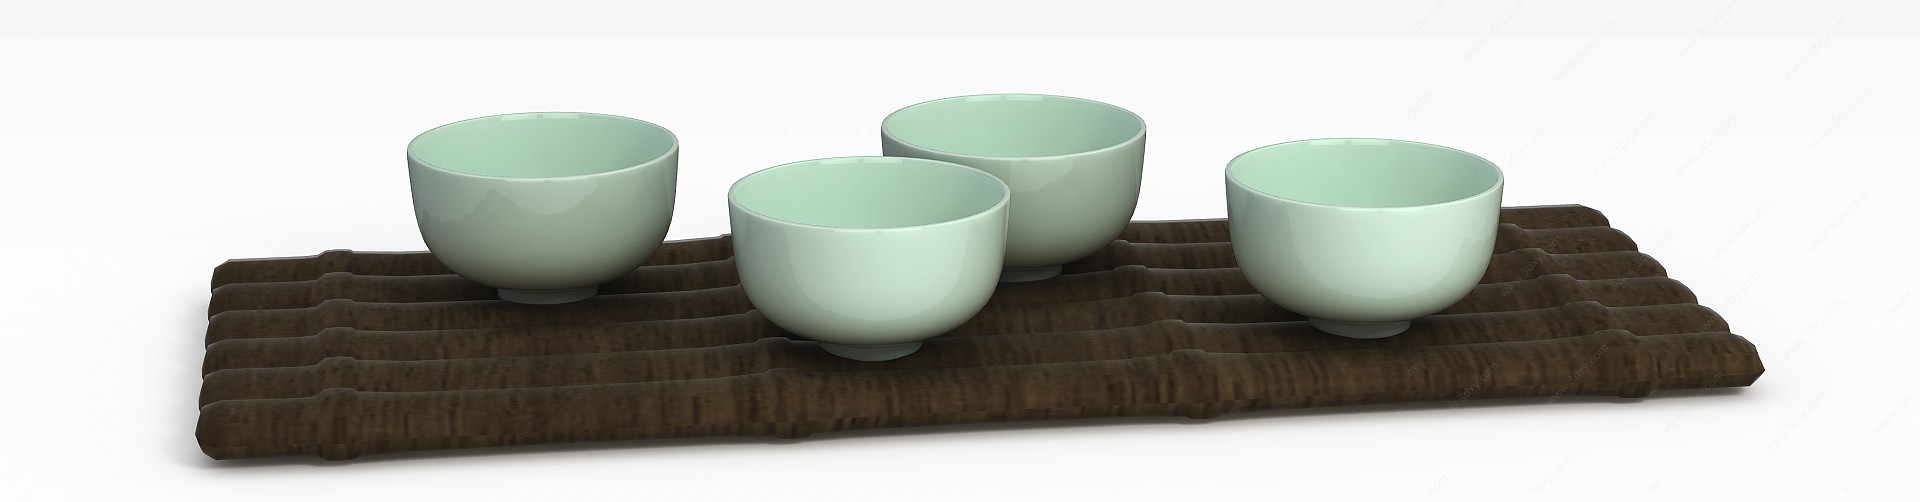 精美陶瓷茶杯3D模型